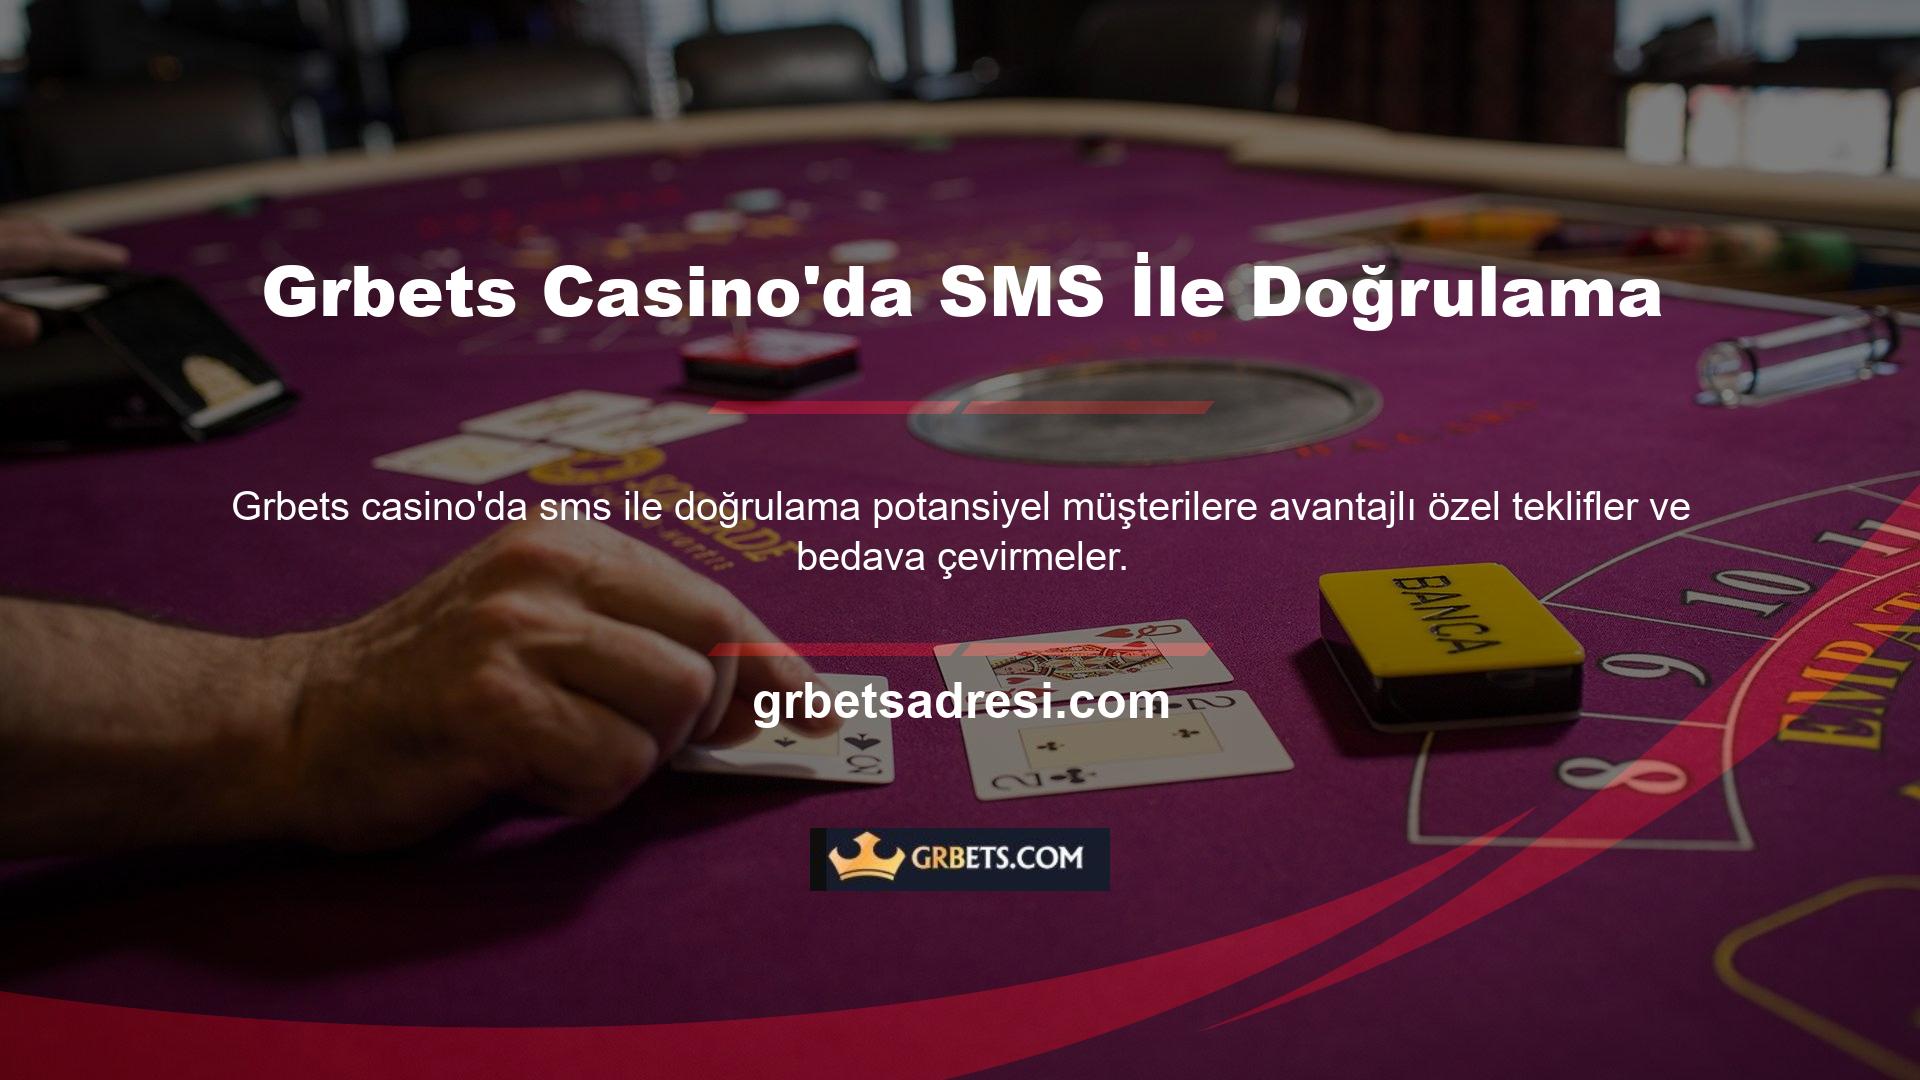 Türkiye'deki başarılı online casinolar arasında Grbets Casino SMS Doğrulaması bulunmaktadır